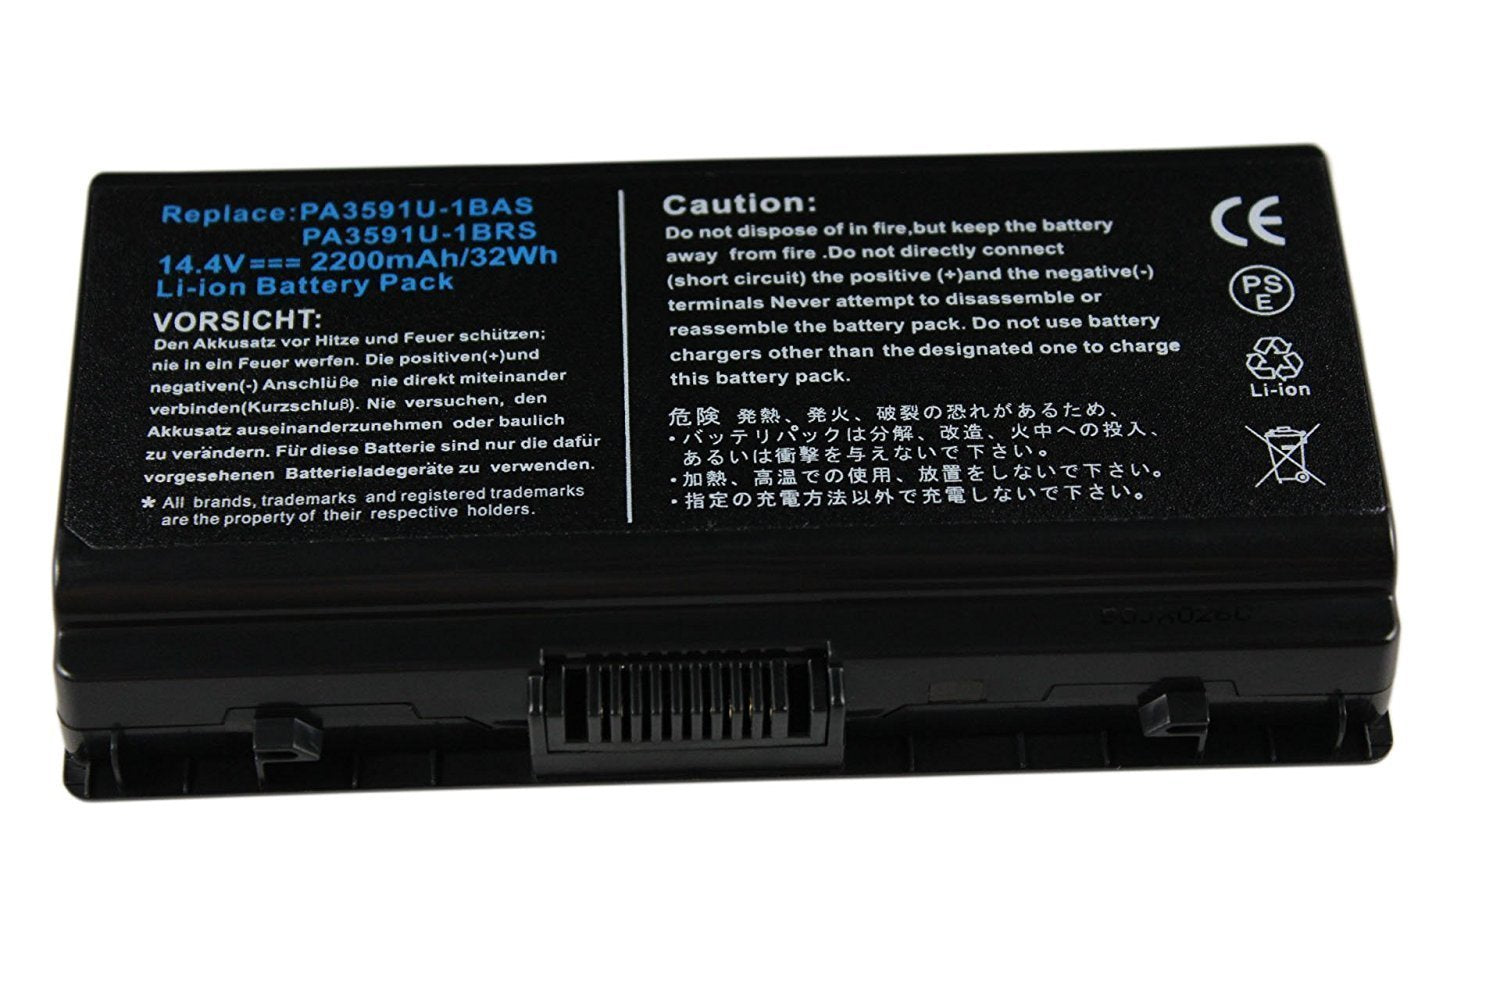 PA3591U-1BAS Toshiba Satellite Pro L40 Series, L45 Series Laptop Battery - eBuy UAE